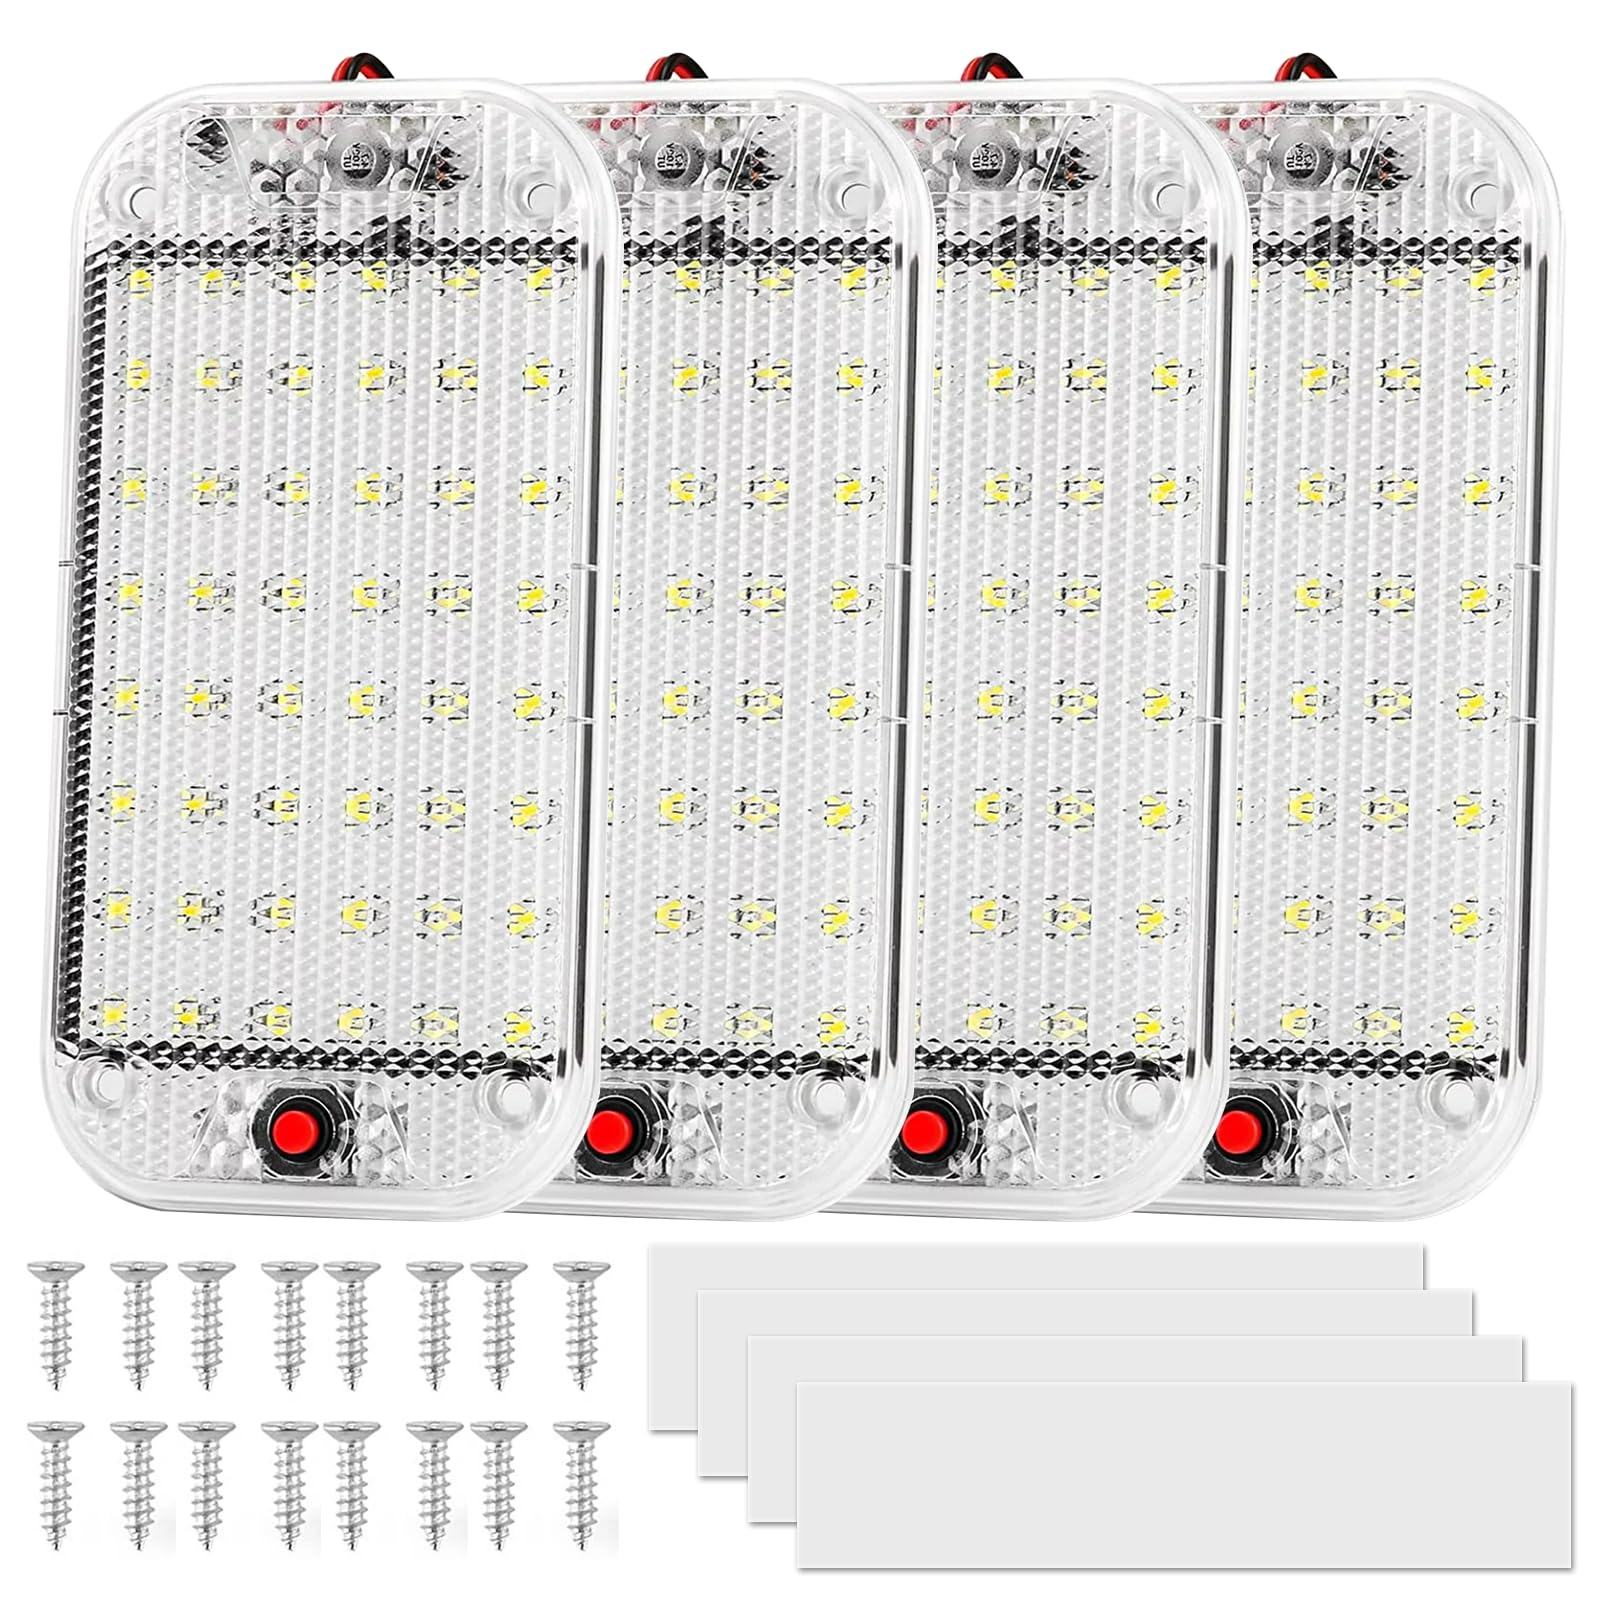 Nizirioo 48 LED KFZ Innenraumbeleuchtung: 4 Stück 12V - 85V Auto Innen Beleuchtung mit Schalter, 10000k Weißlicht, LED Innenbeluchtung Auto für Wohnmobile LKW Van Caravan von Nizirioo